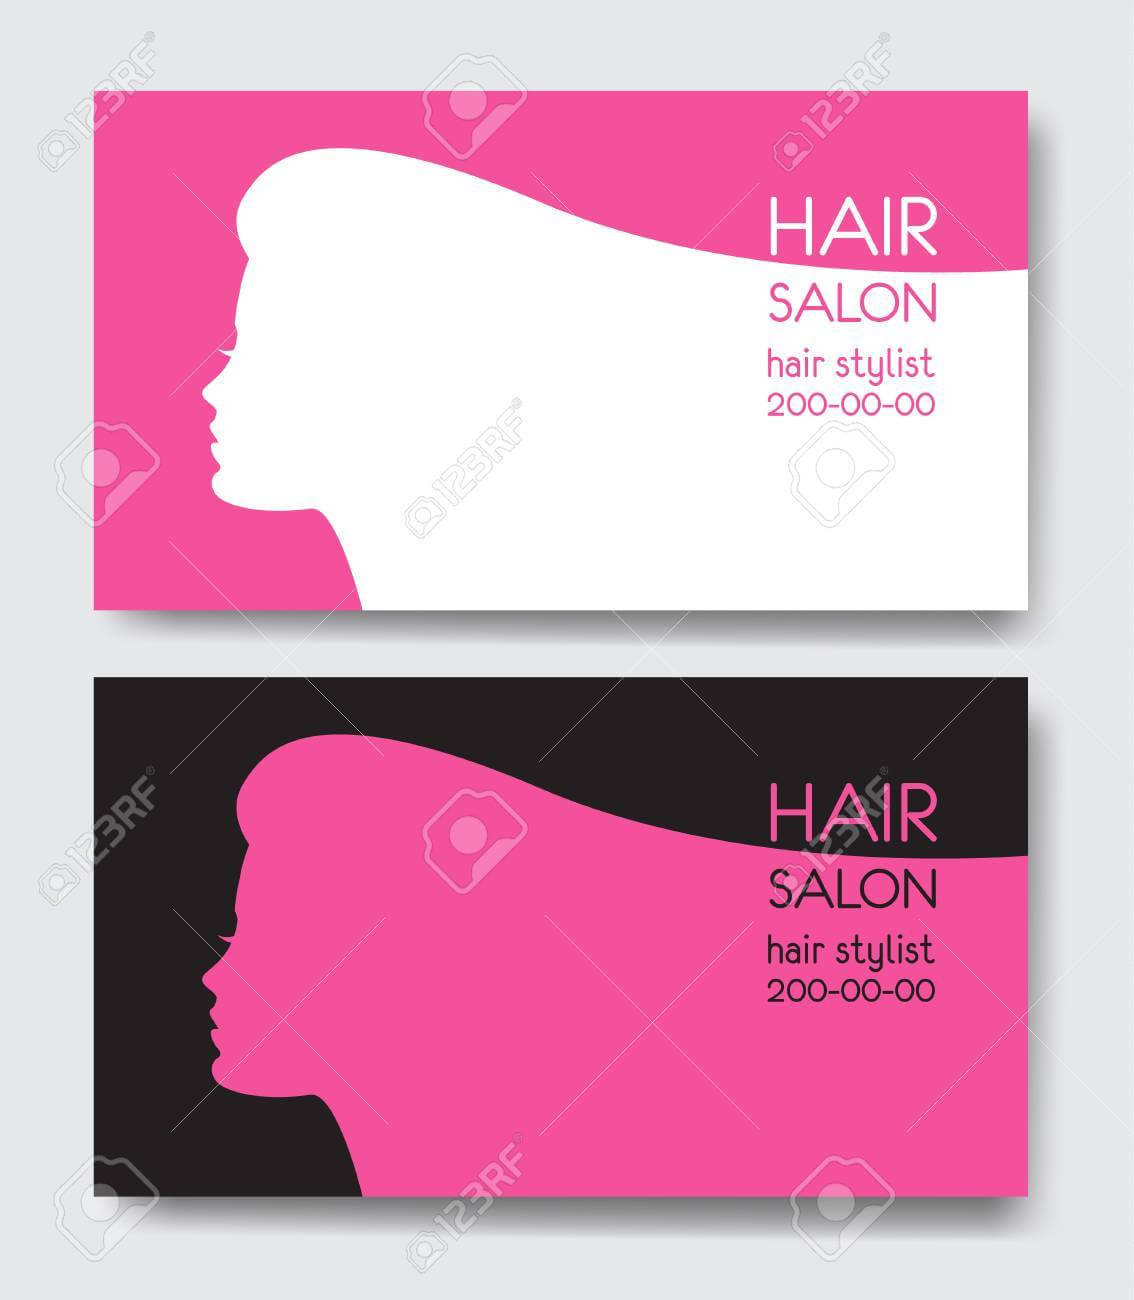 Hair Salon Business Card Templates. With Hair Salon Business Card Template